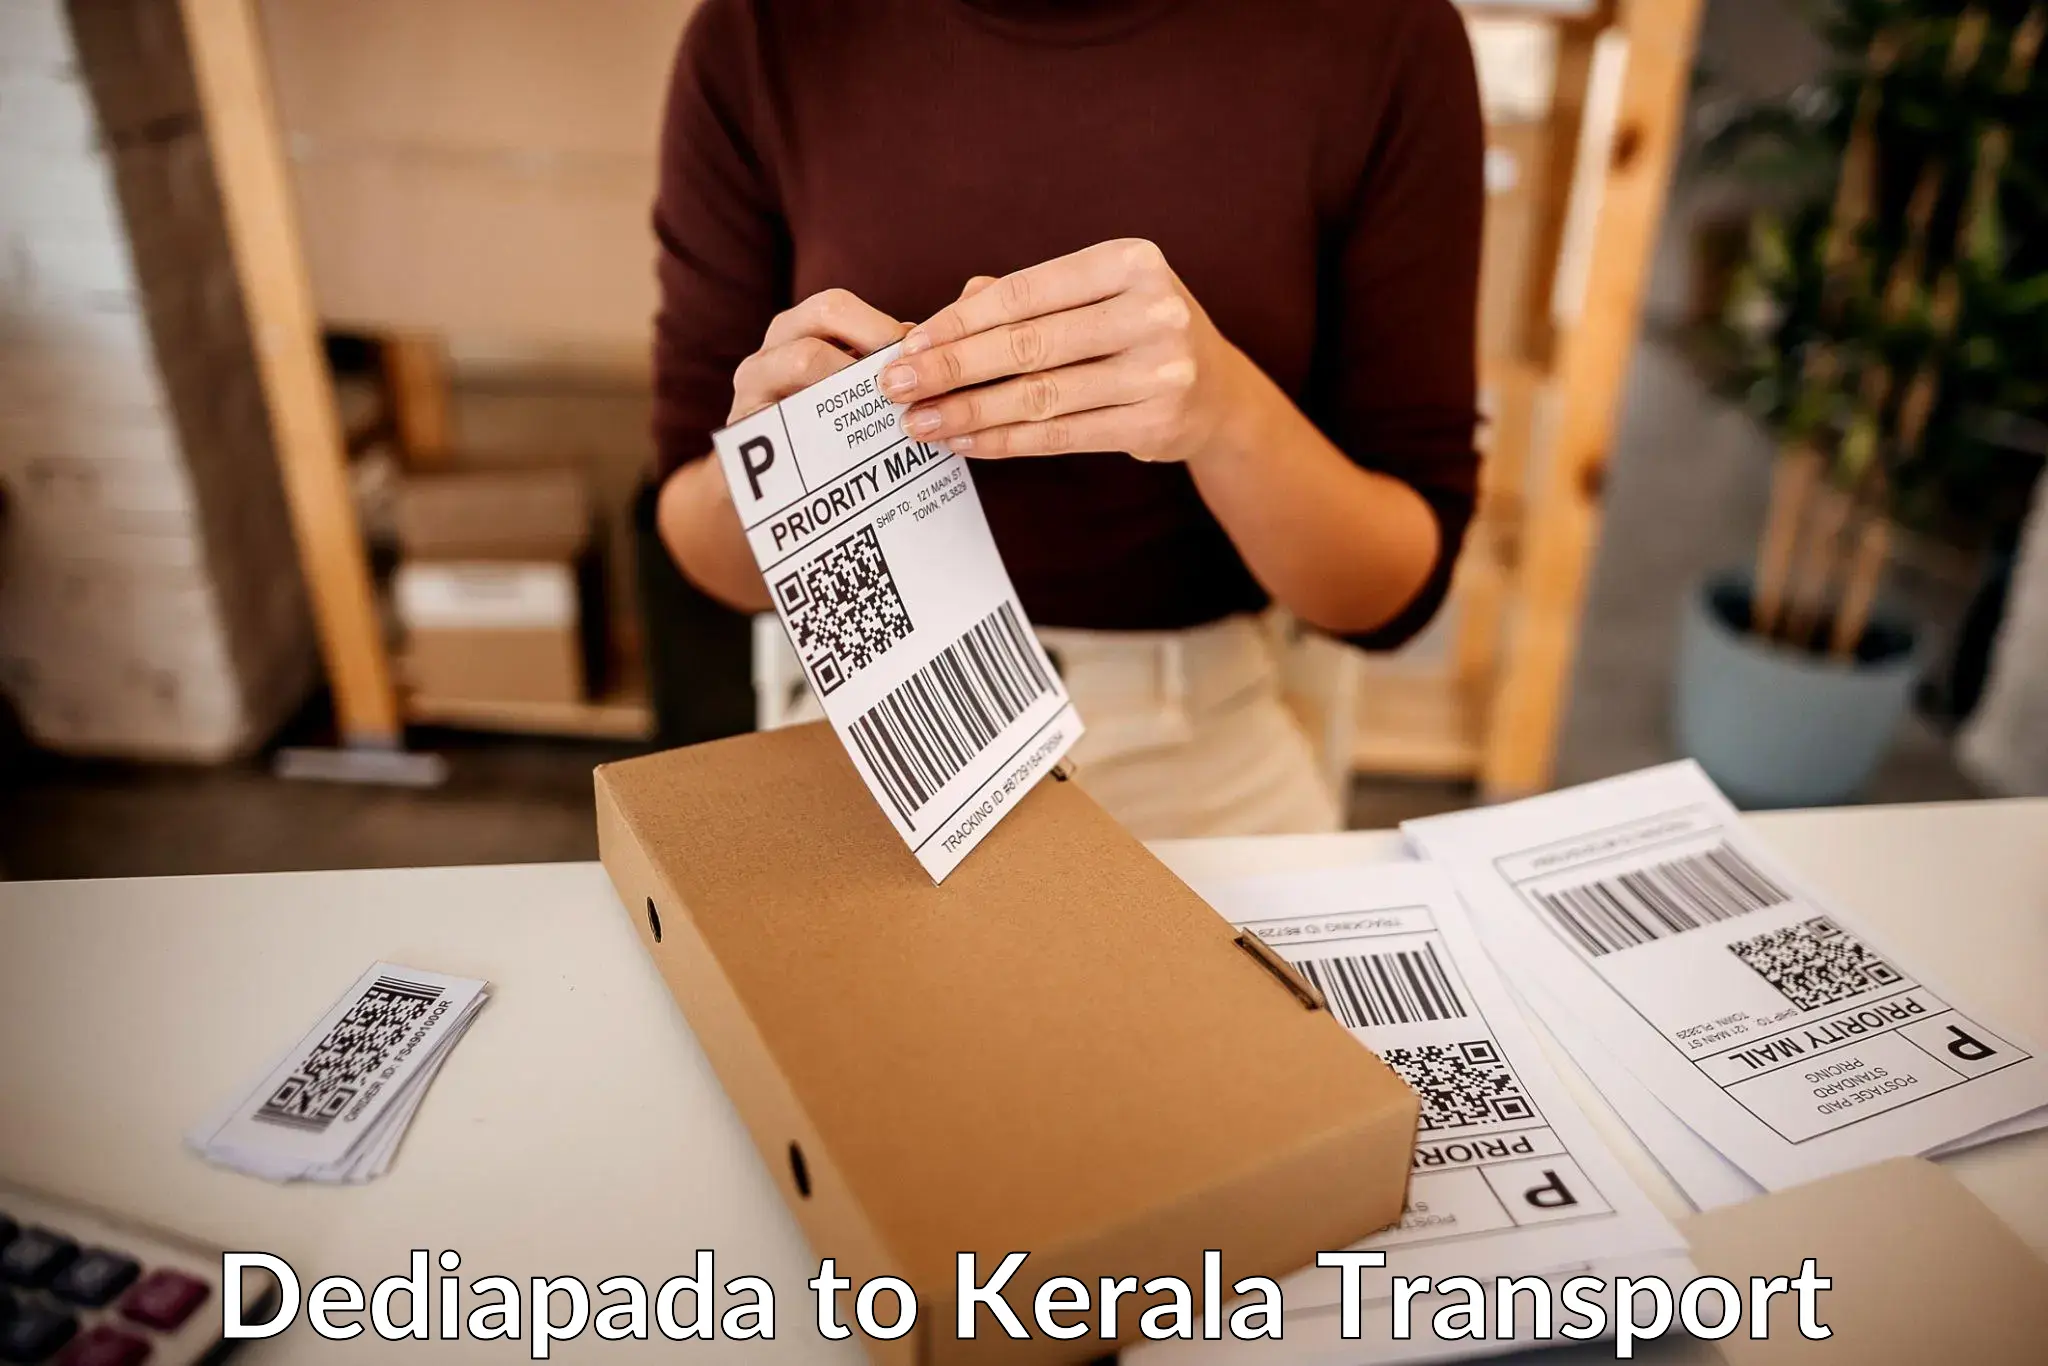 Delivery service Dediapada to Kadanad